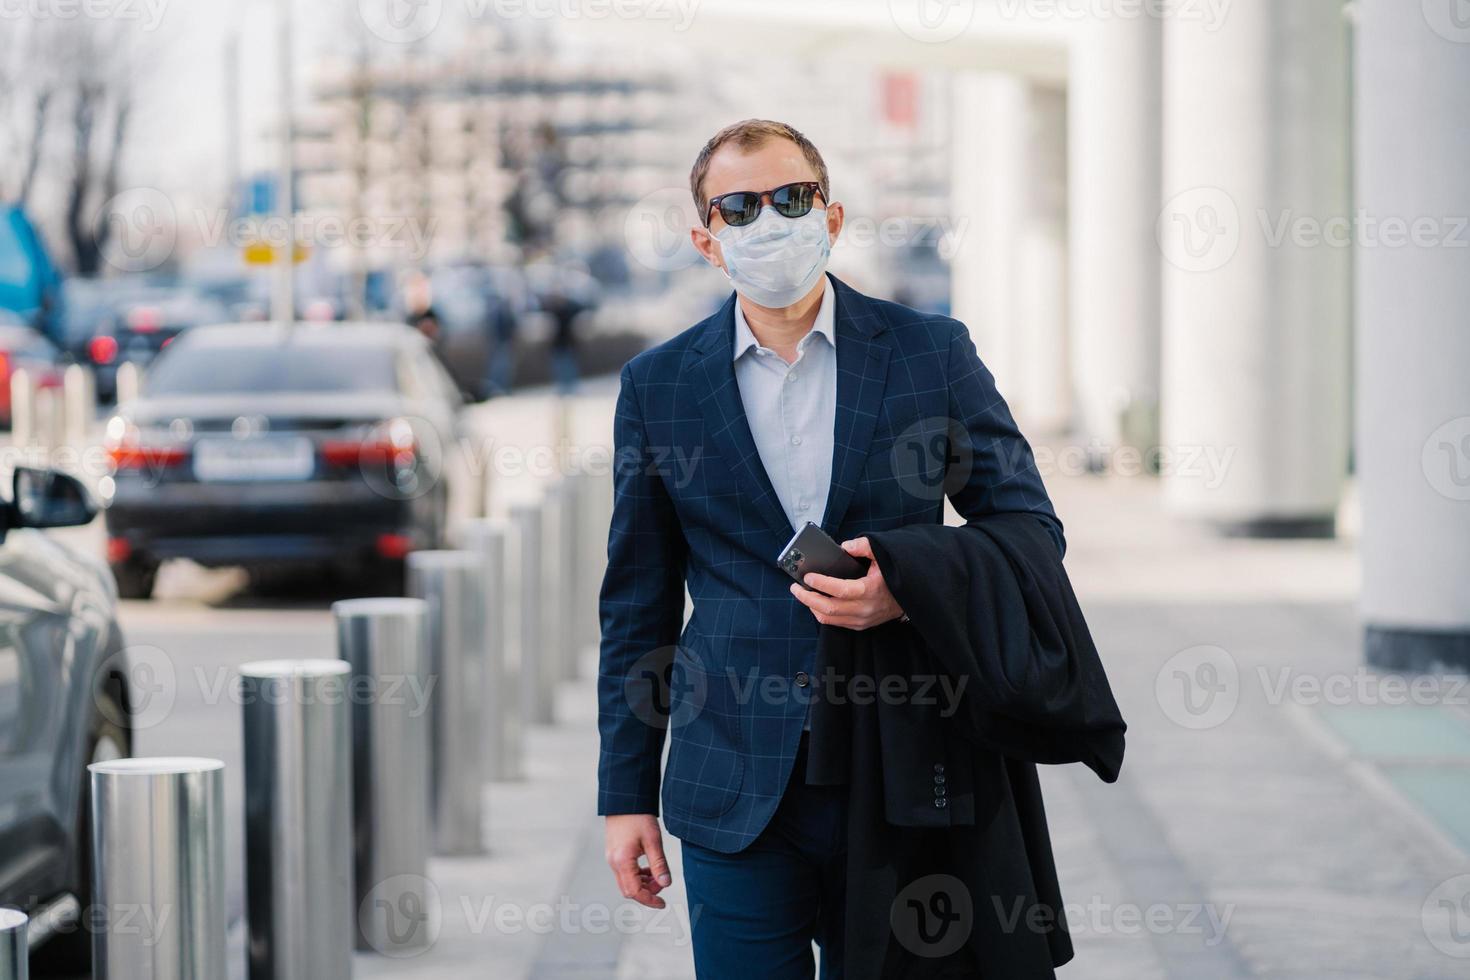 homme d'affaires en vêtements noirs élégants, masque médical, tient un smartphone dans les mains, se promène dans une ville animée avec de nombreux transports, se protège du coronavirus pendant la pandémie. protection antivirus photo